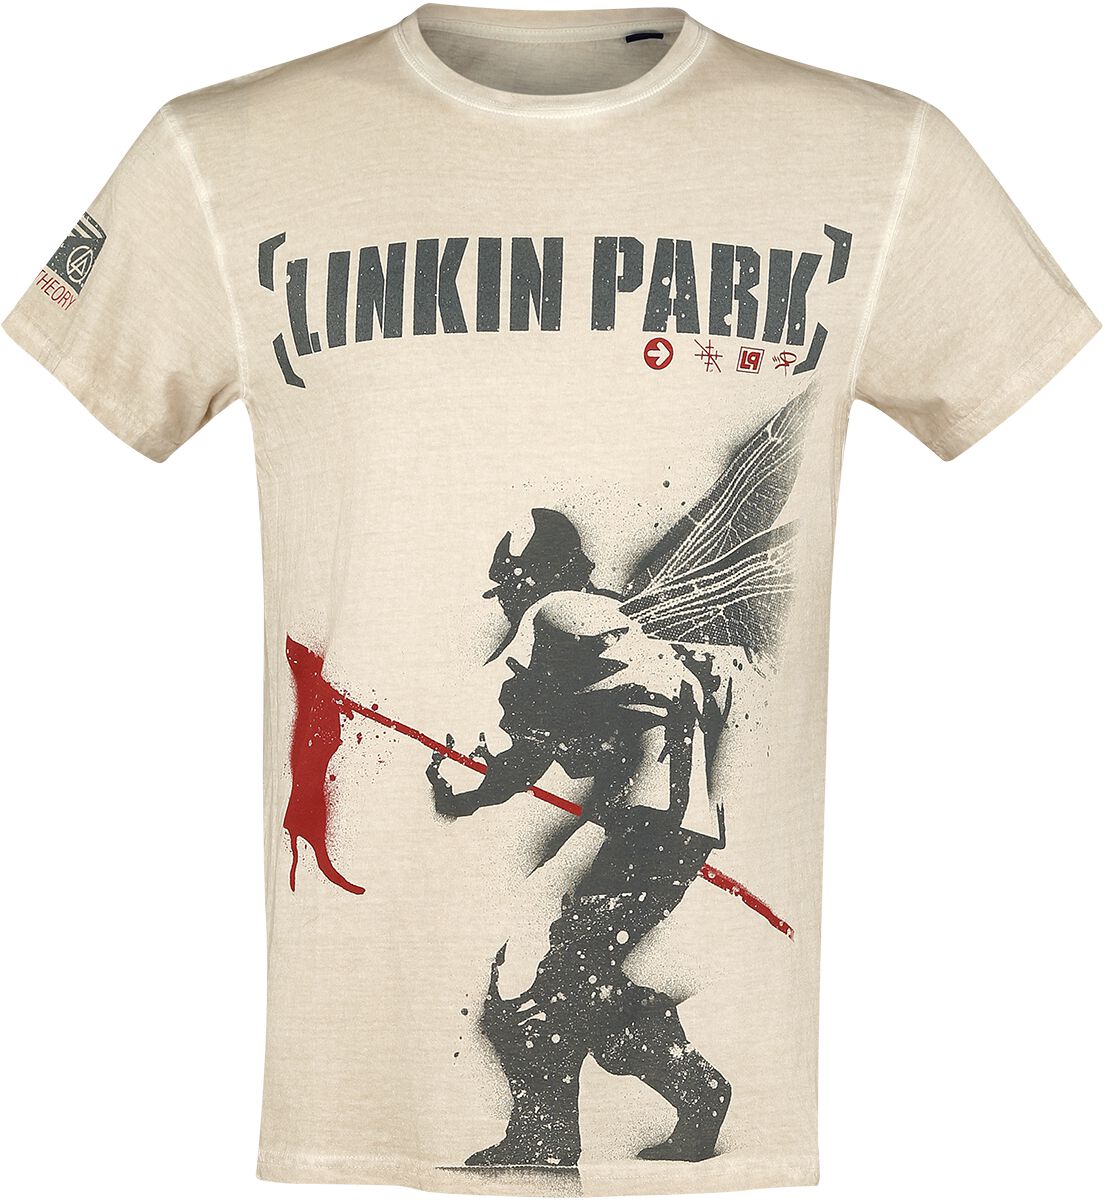 Linkin Park T-Shirt - Hybrid Theory - M bis 4XL - für Männer - Größe M - altweiß  - EMP exklusives Merchandise!